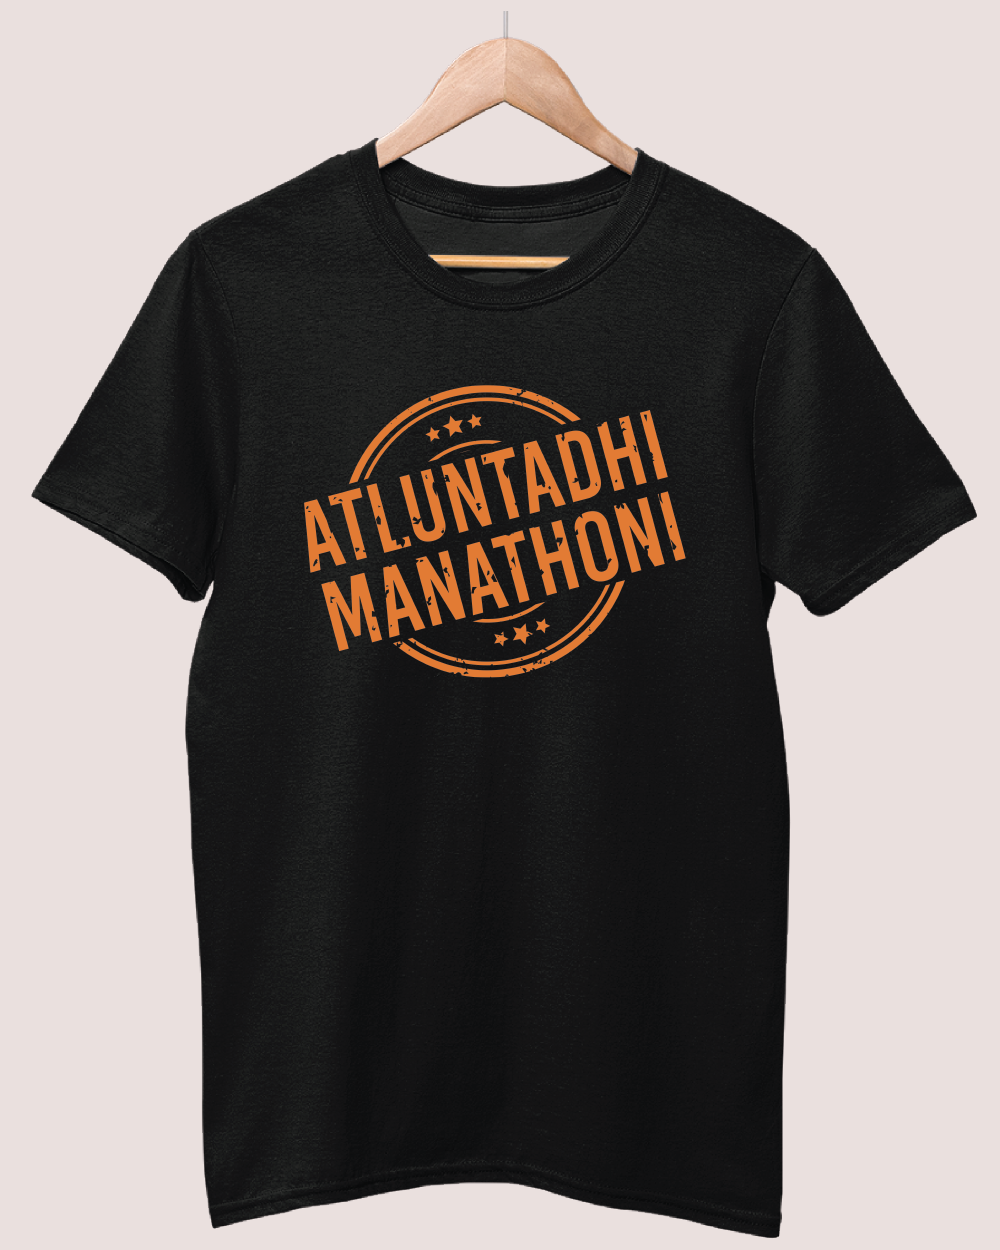 Atluntadhi manathoni T-shirt